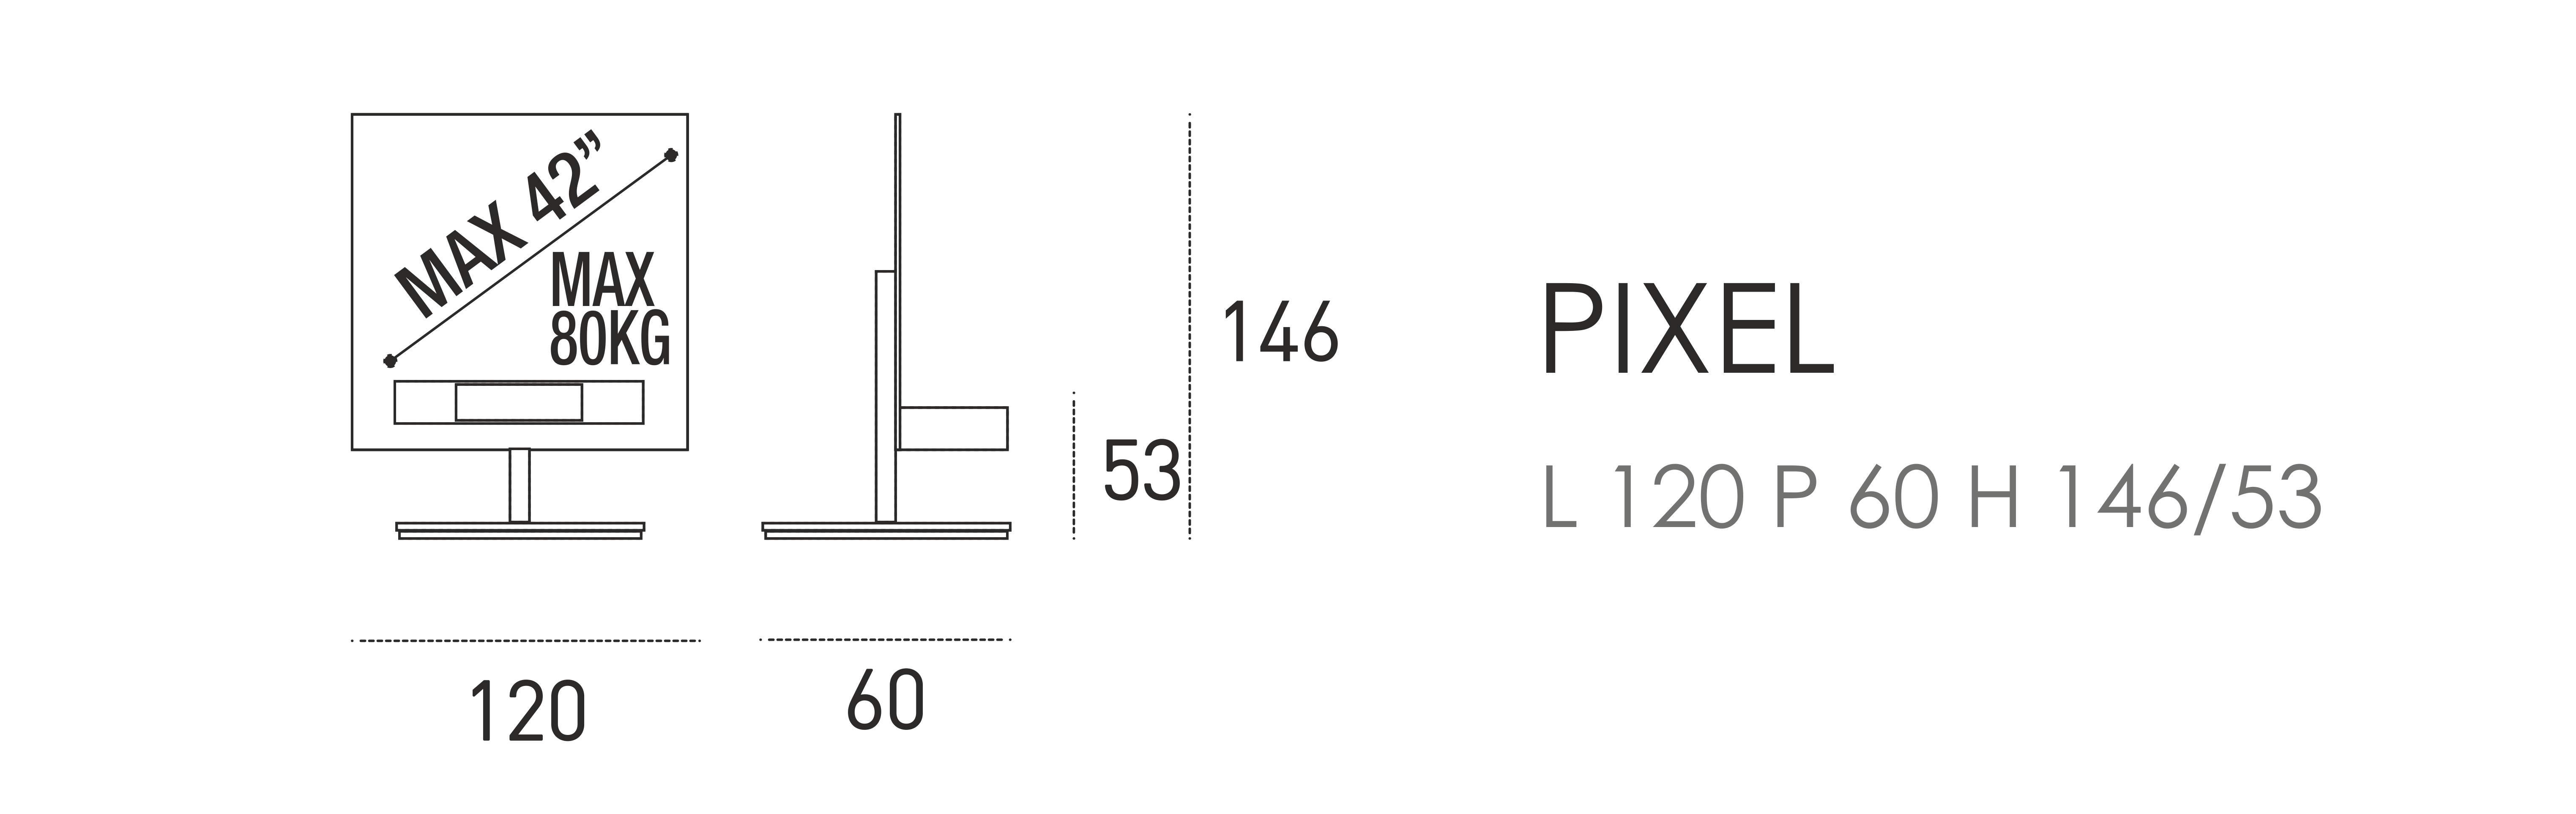 Pixel L 120 P 60 H 146/53